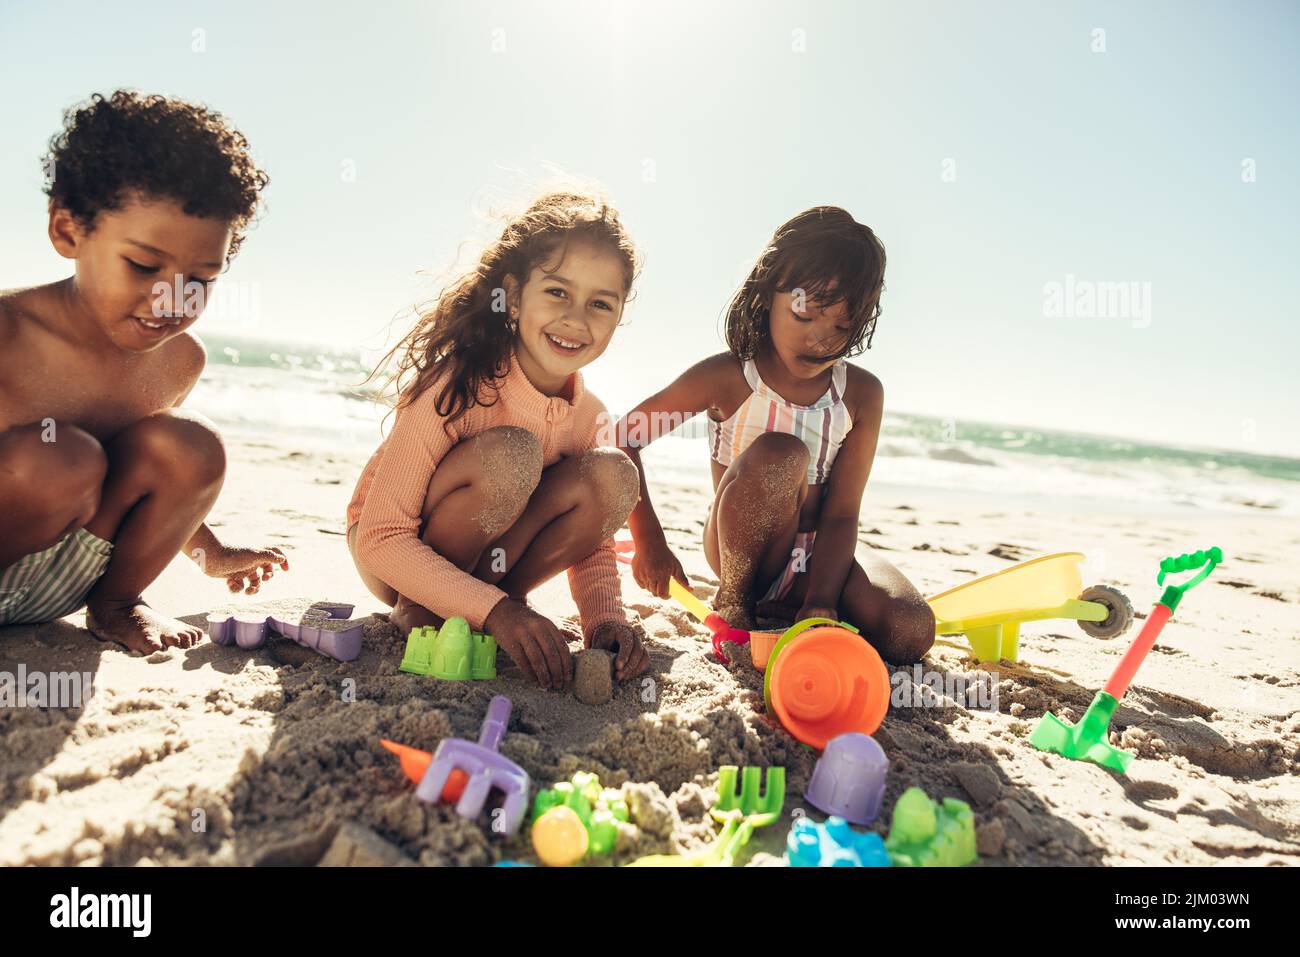 Grupo de niños felices jugando con sus juguetes en la arena de la playa. Tres niños despreocupados pasando un buen rato en una playa soleada durante las vacaciones de verano. Foto de stock